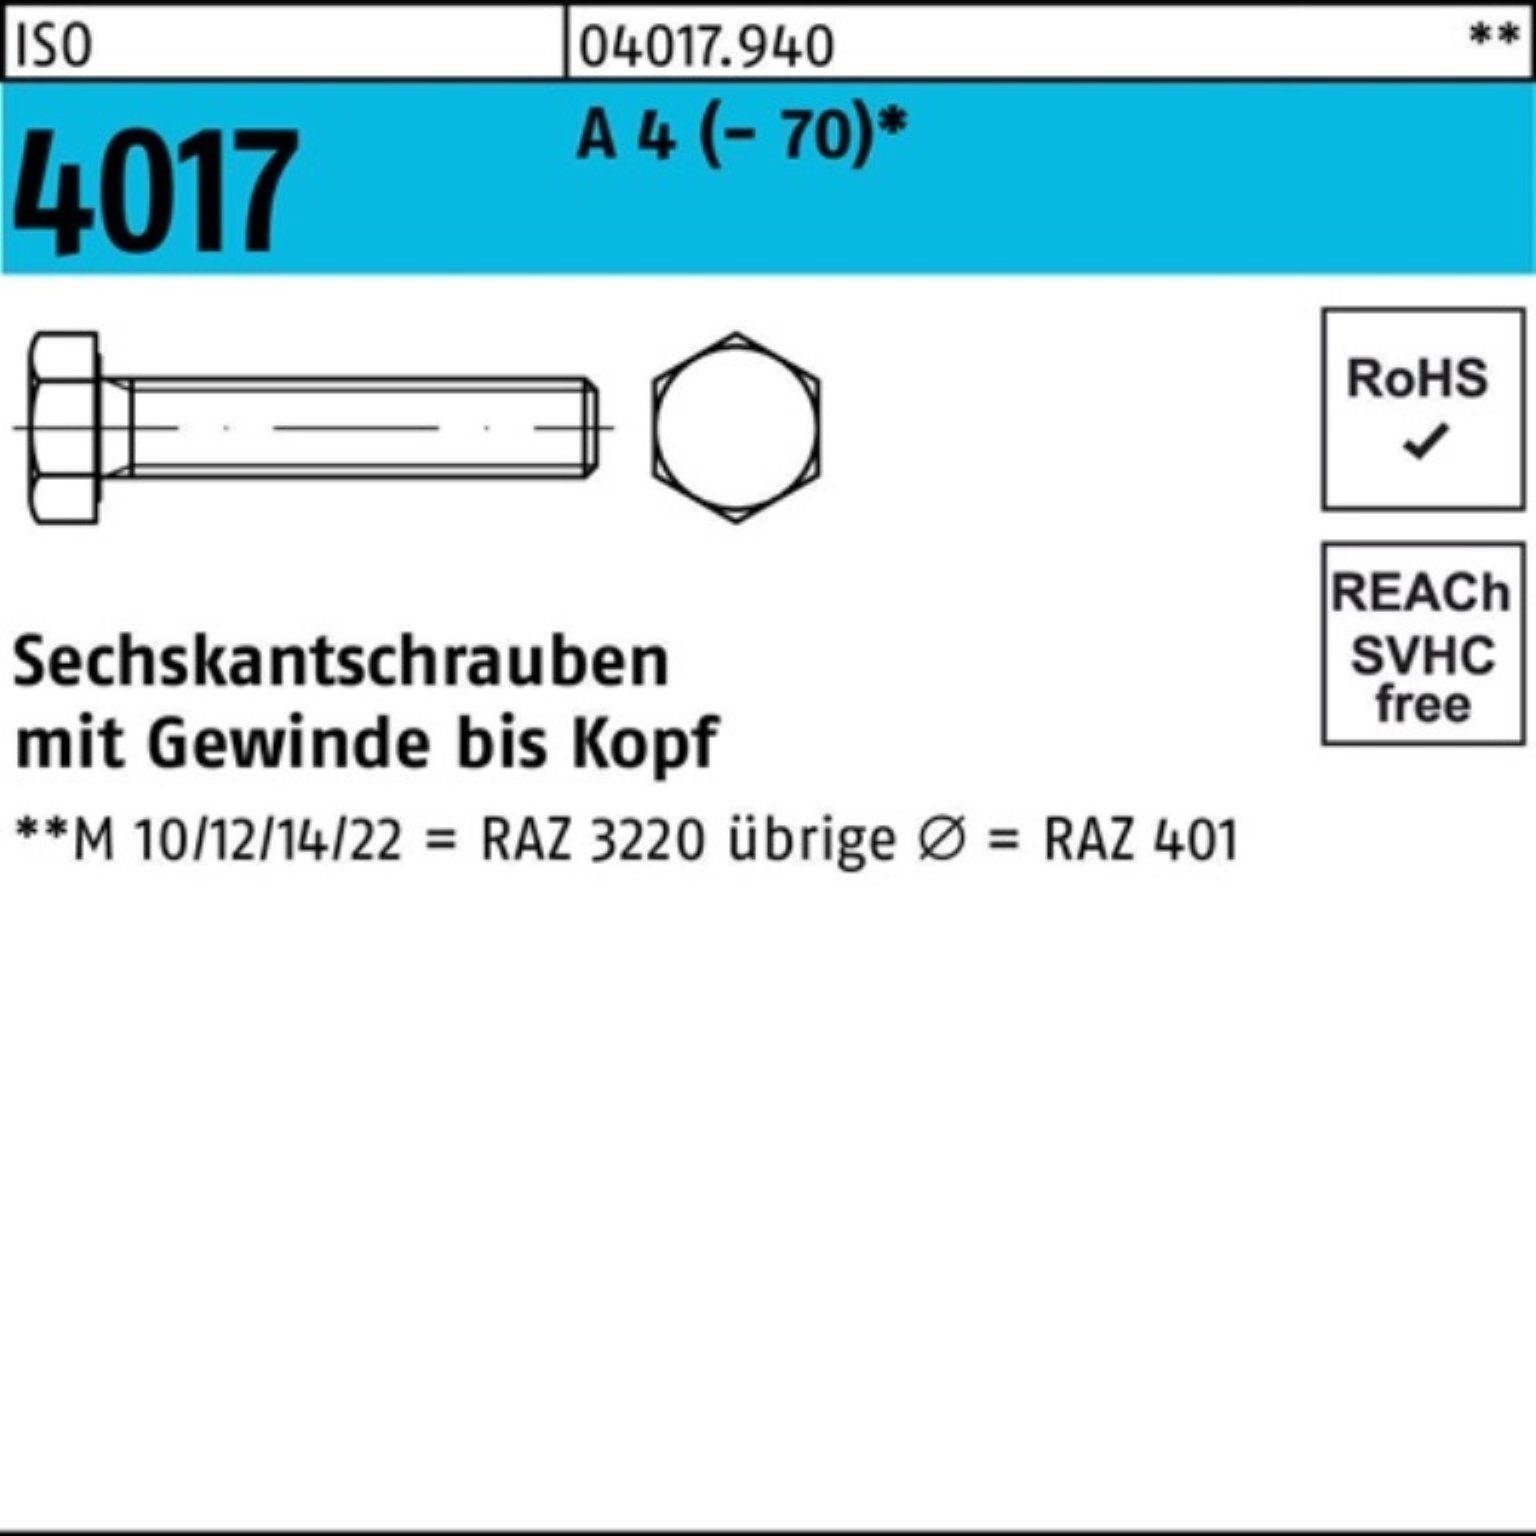 Sechskantschraube M12x Bufab A Pack VG Stück 4017 ISO 50 4 Sechskantschraube (70) 50 100er